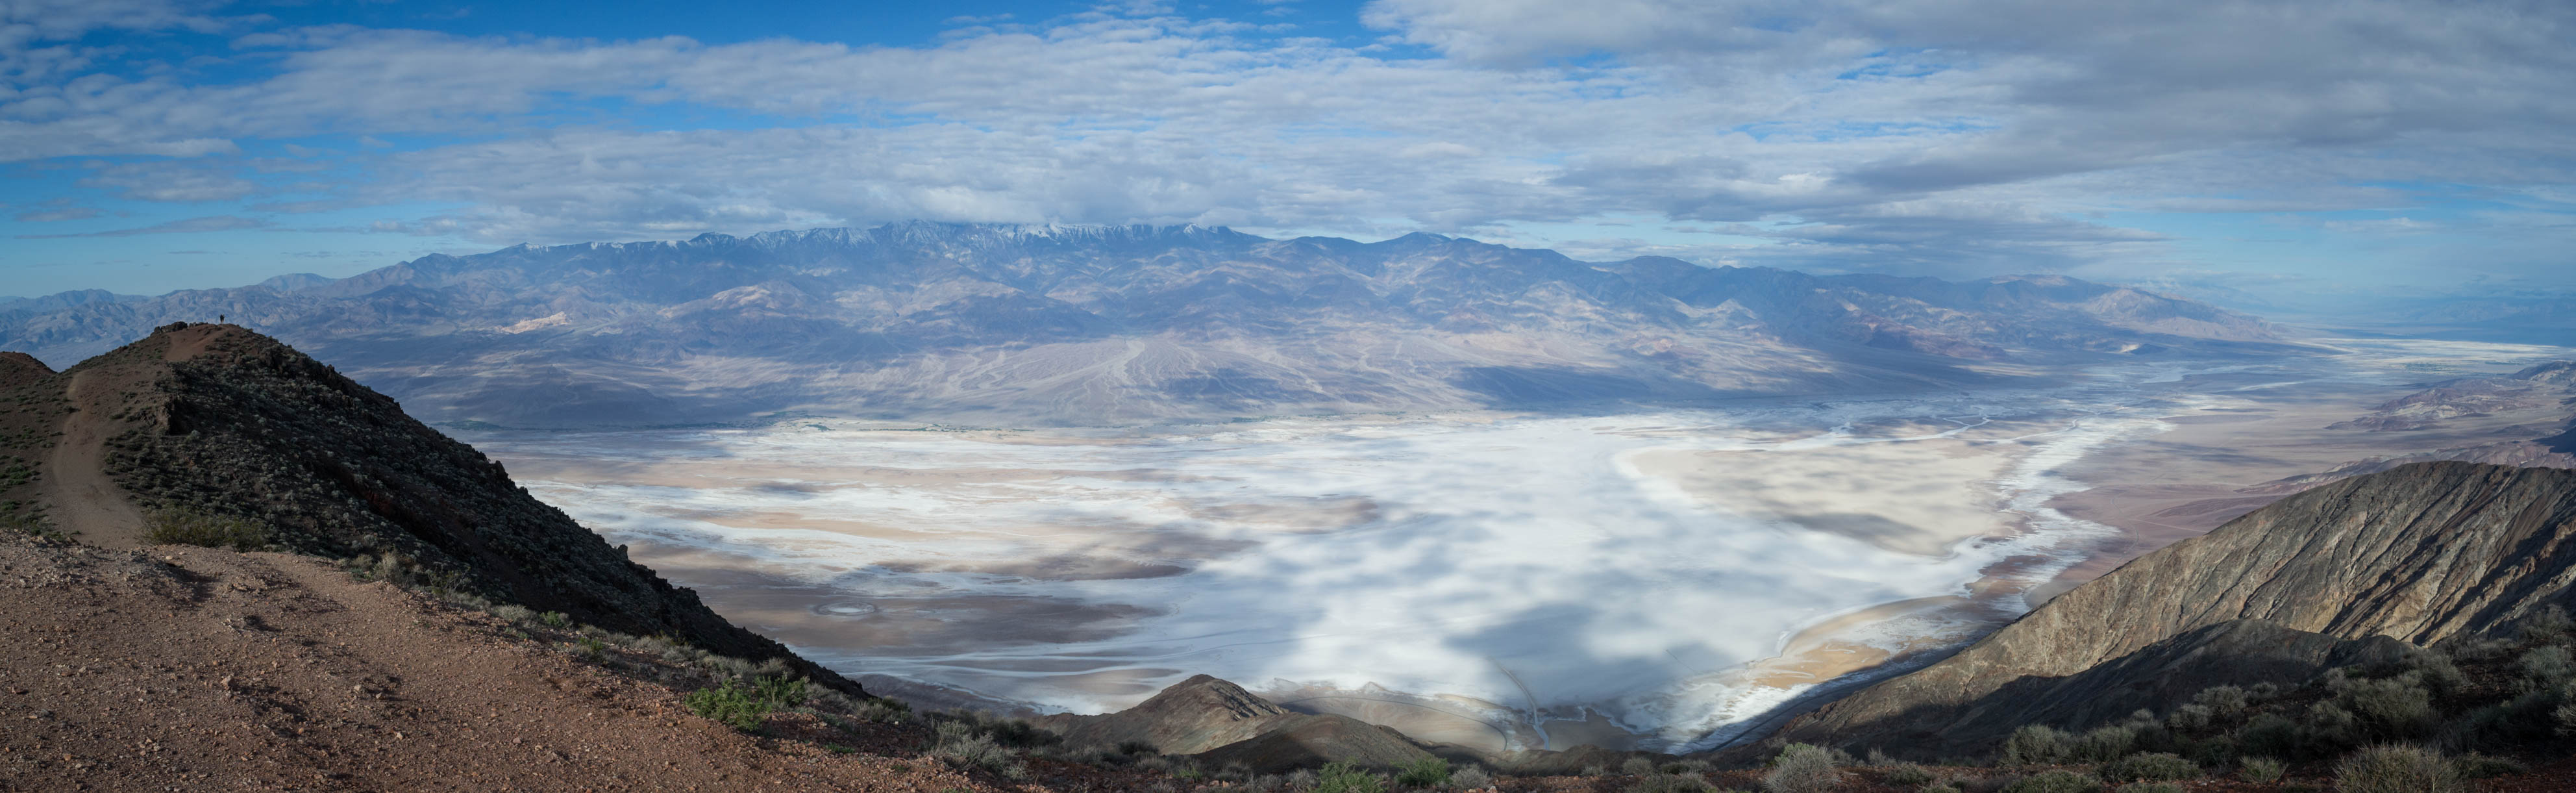 Dantes View avec un point de vue sublime sur le désert de sel, 1755m plus bas